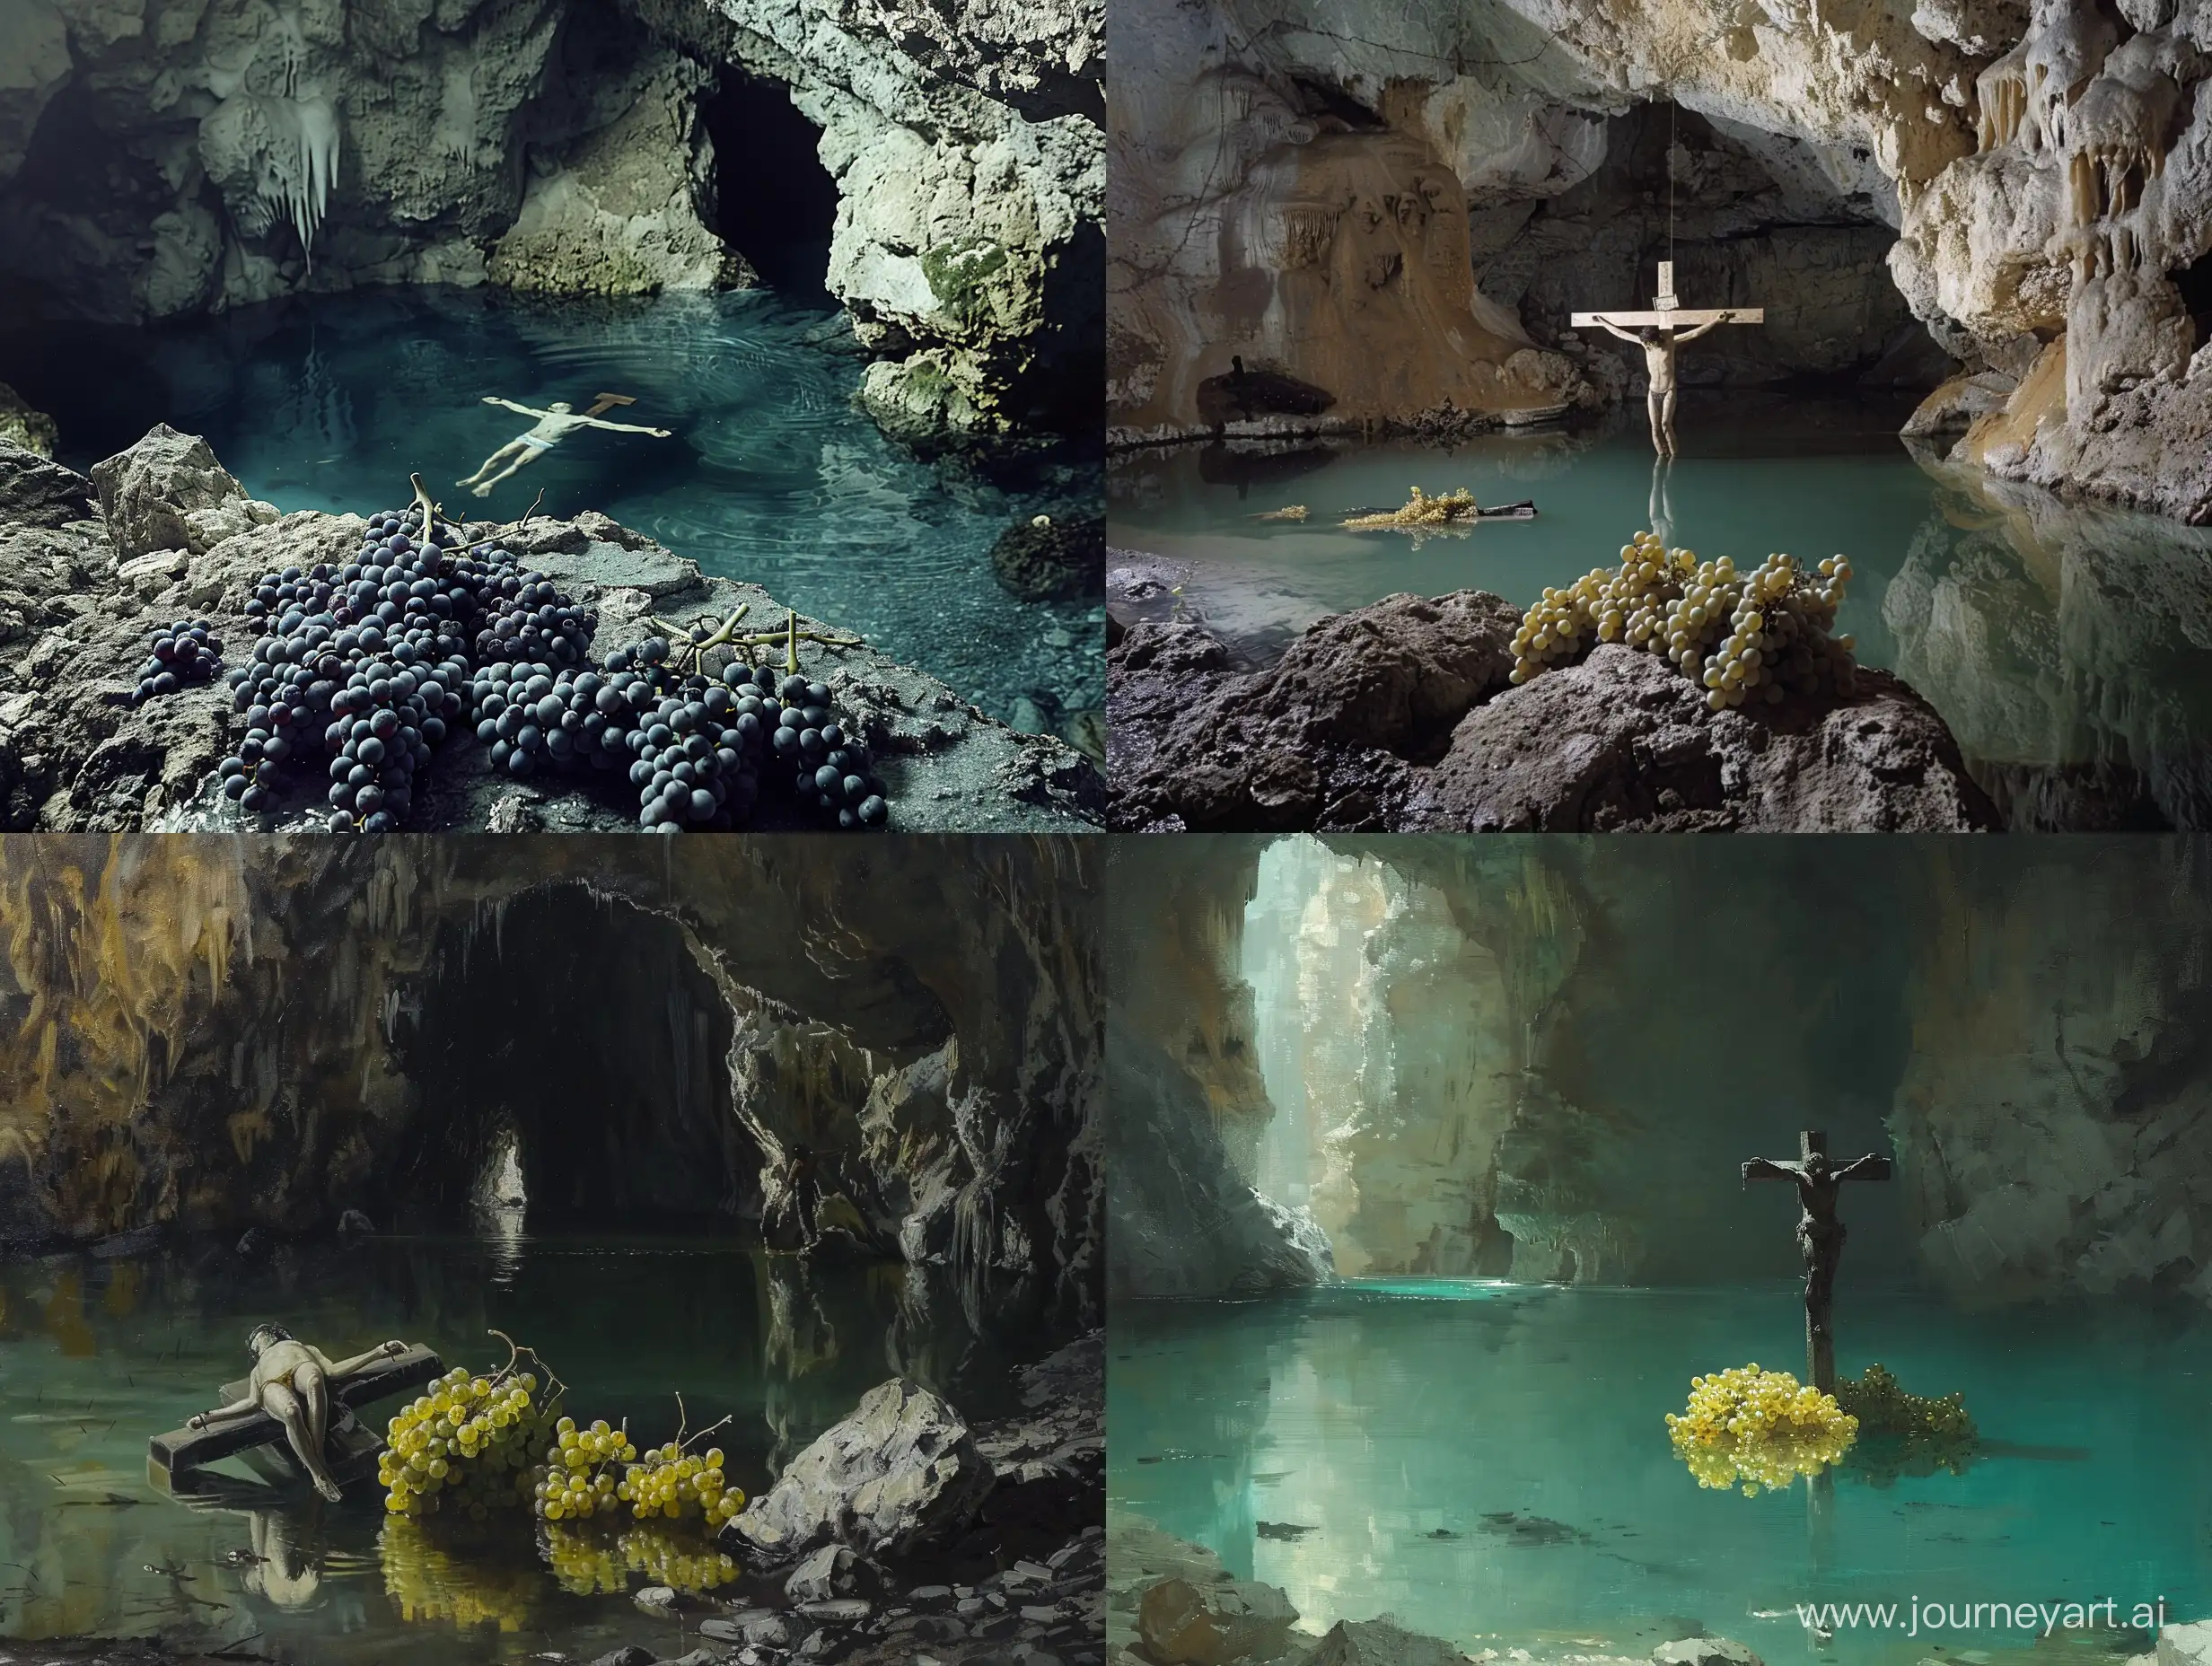 Пещера в которой находится озеро, в центре озера, наполовину погружен мужчина, который распят на кресте. Рядом с ним лежат виноградные грозди